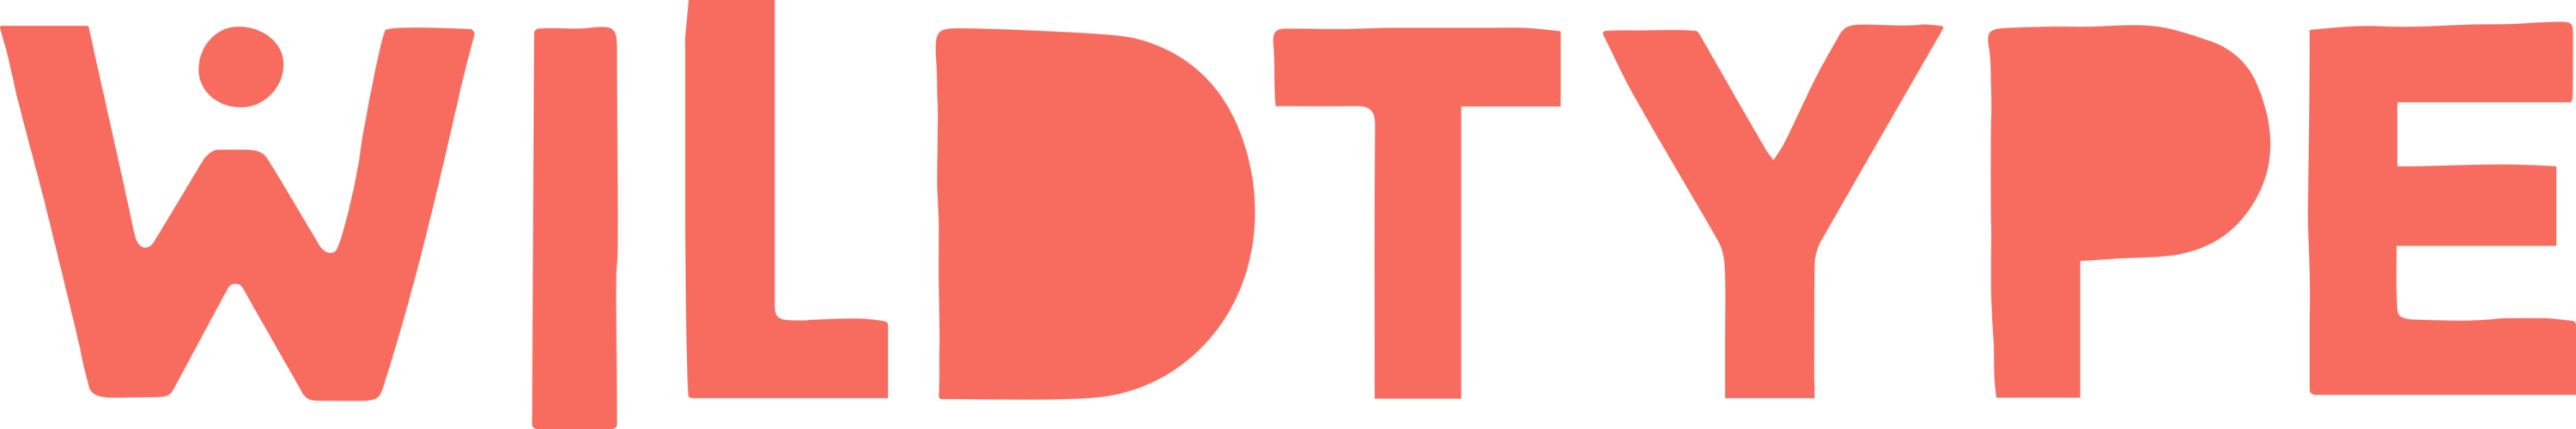 Wildtype Logo